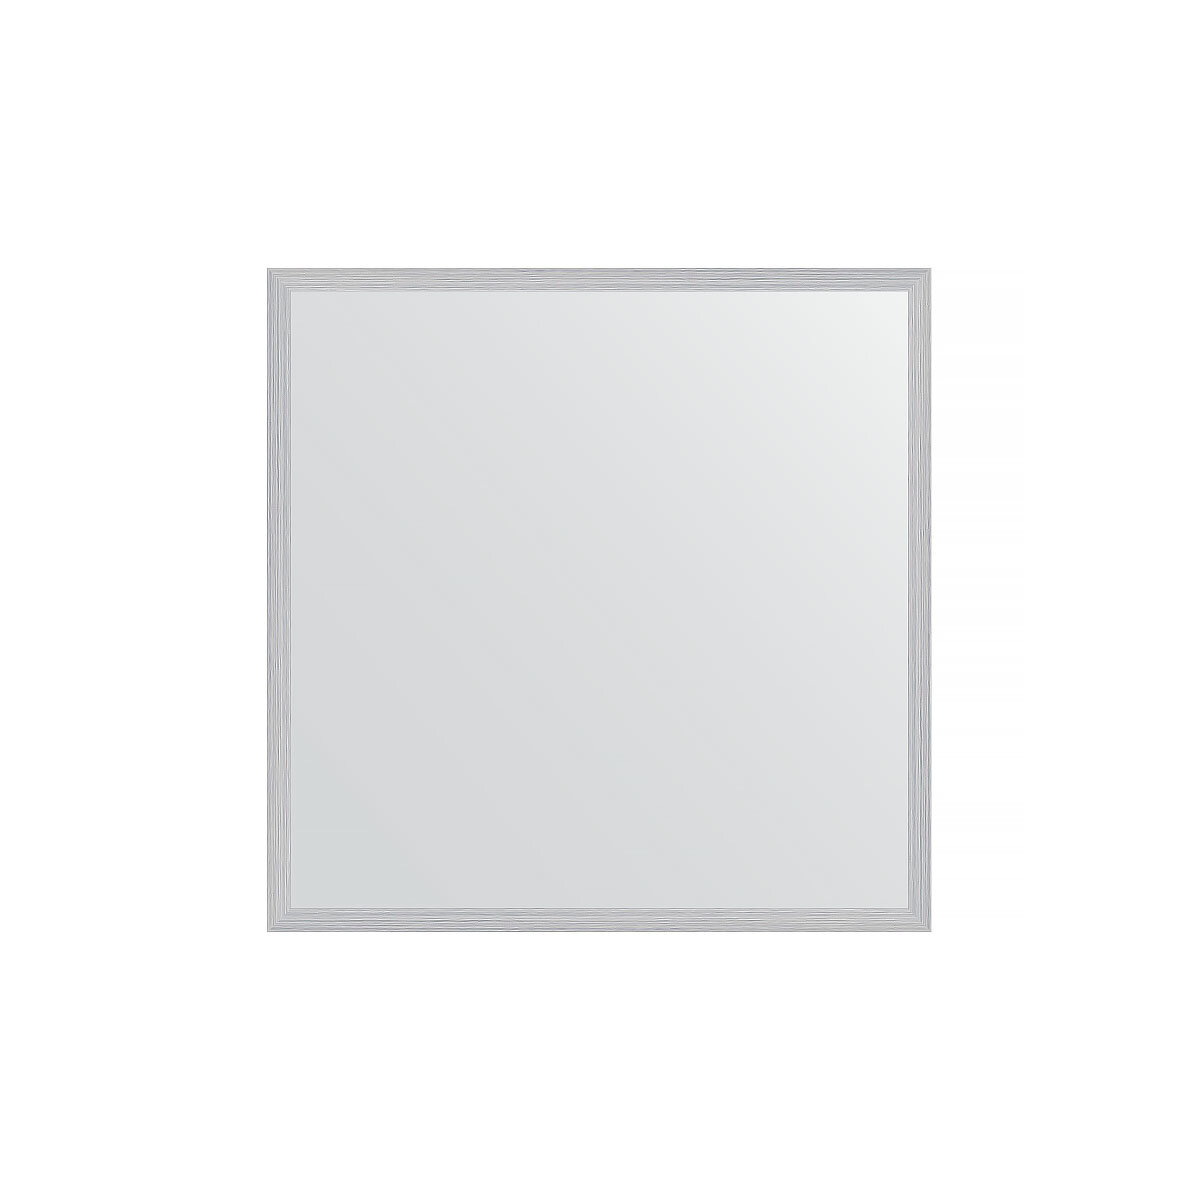 Зеркало настенное EVOFORM в багетной раме сталь, 56х56 см, для гостиной, прихожей, кабинета, спальни и ванной комнаты, BY 0774